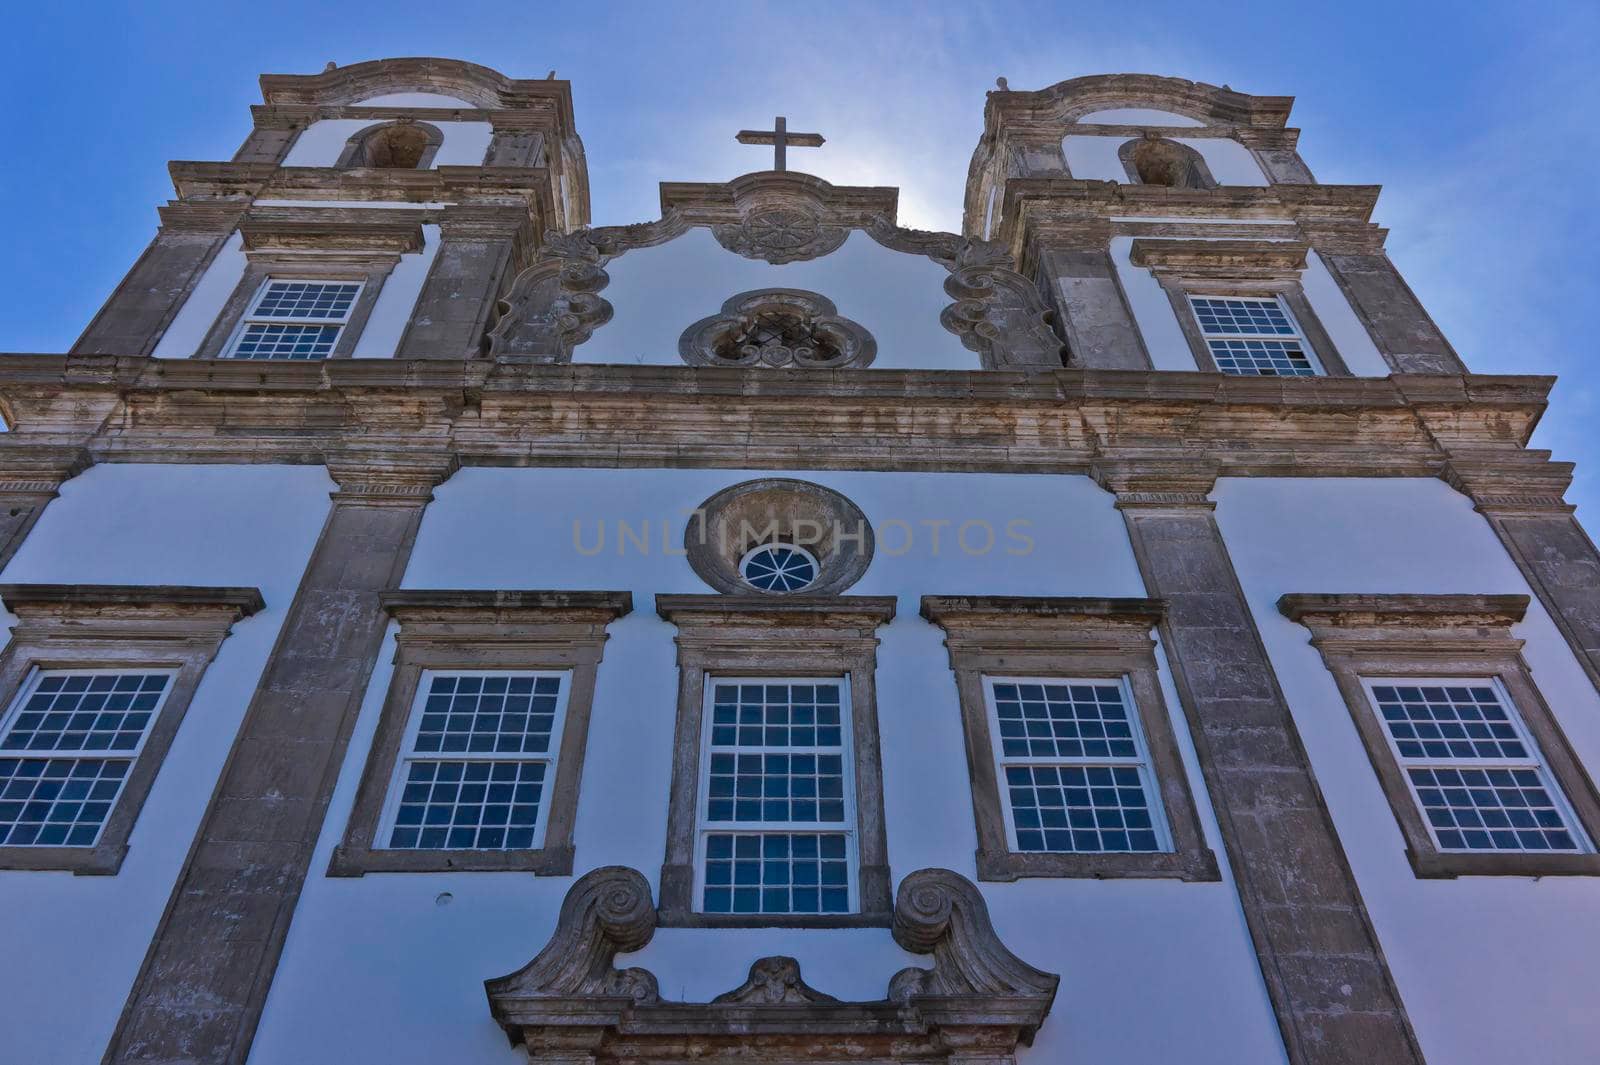 Salvador de Bahia, Pelourinho view with a  Colonial Church, Brazil, South America